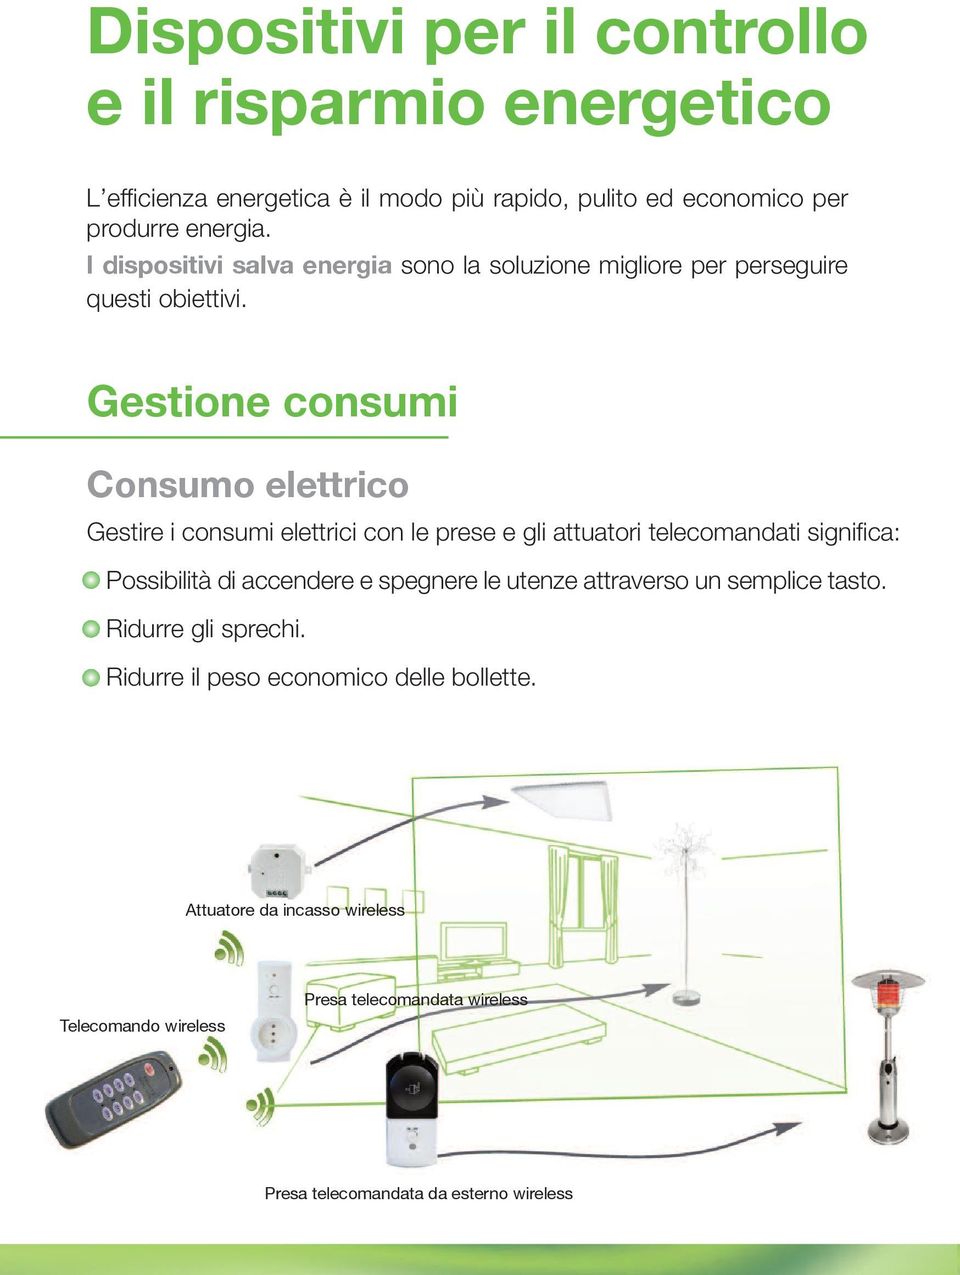 Gestione consumi Consumo elettrico Gestire i consumi elettrici con le prese e gli attuatori telecomandati significa: Possibilità di accendere e